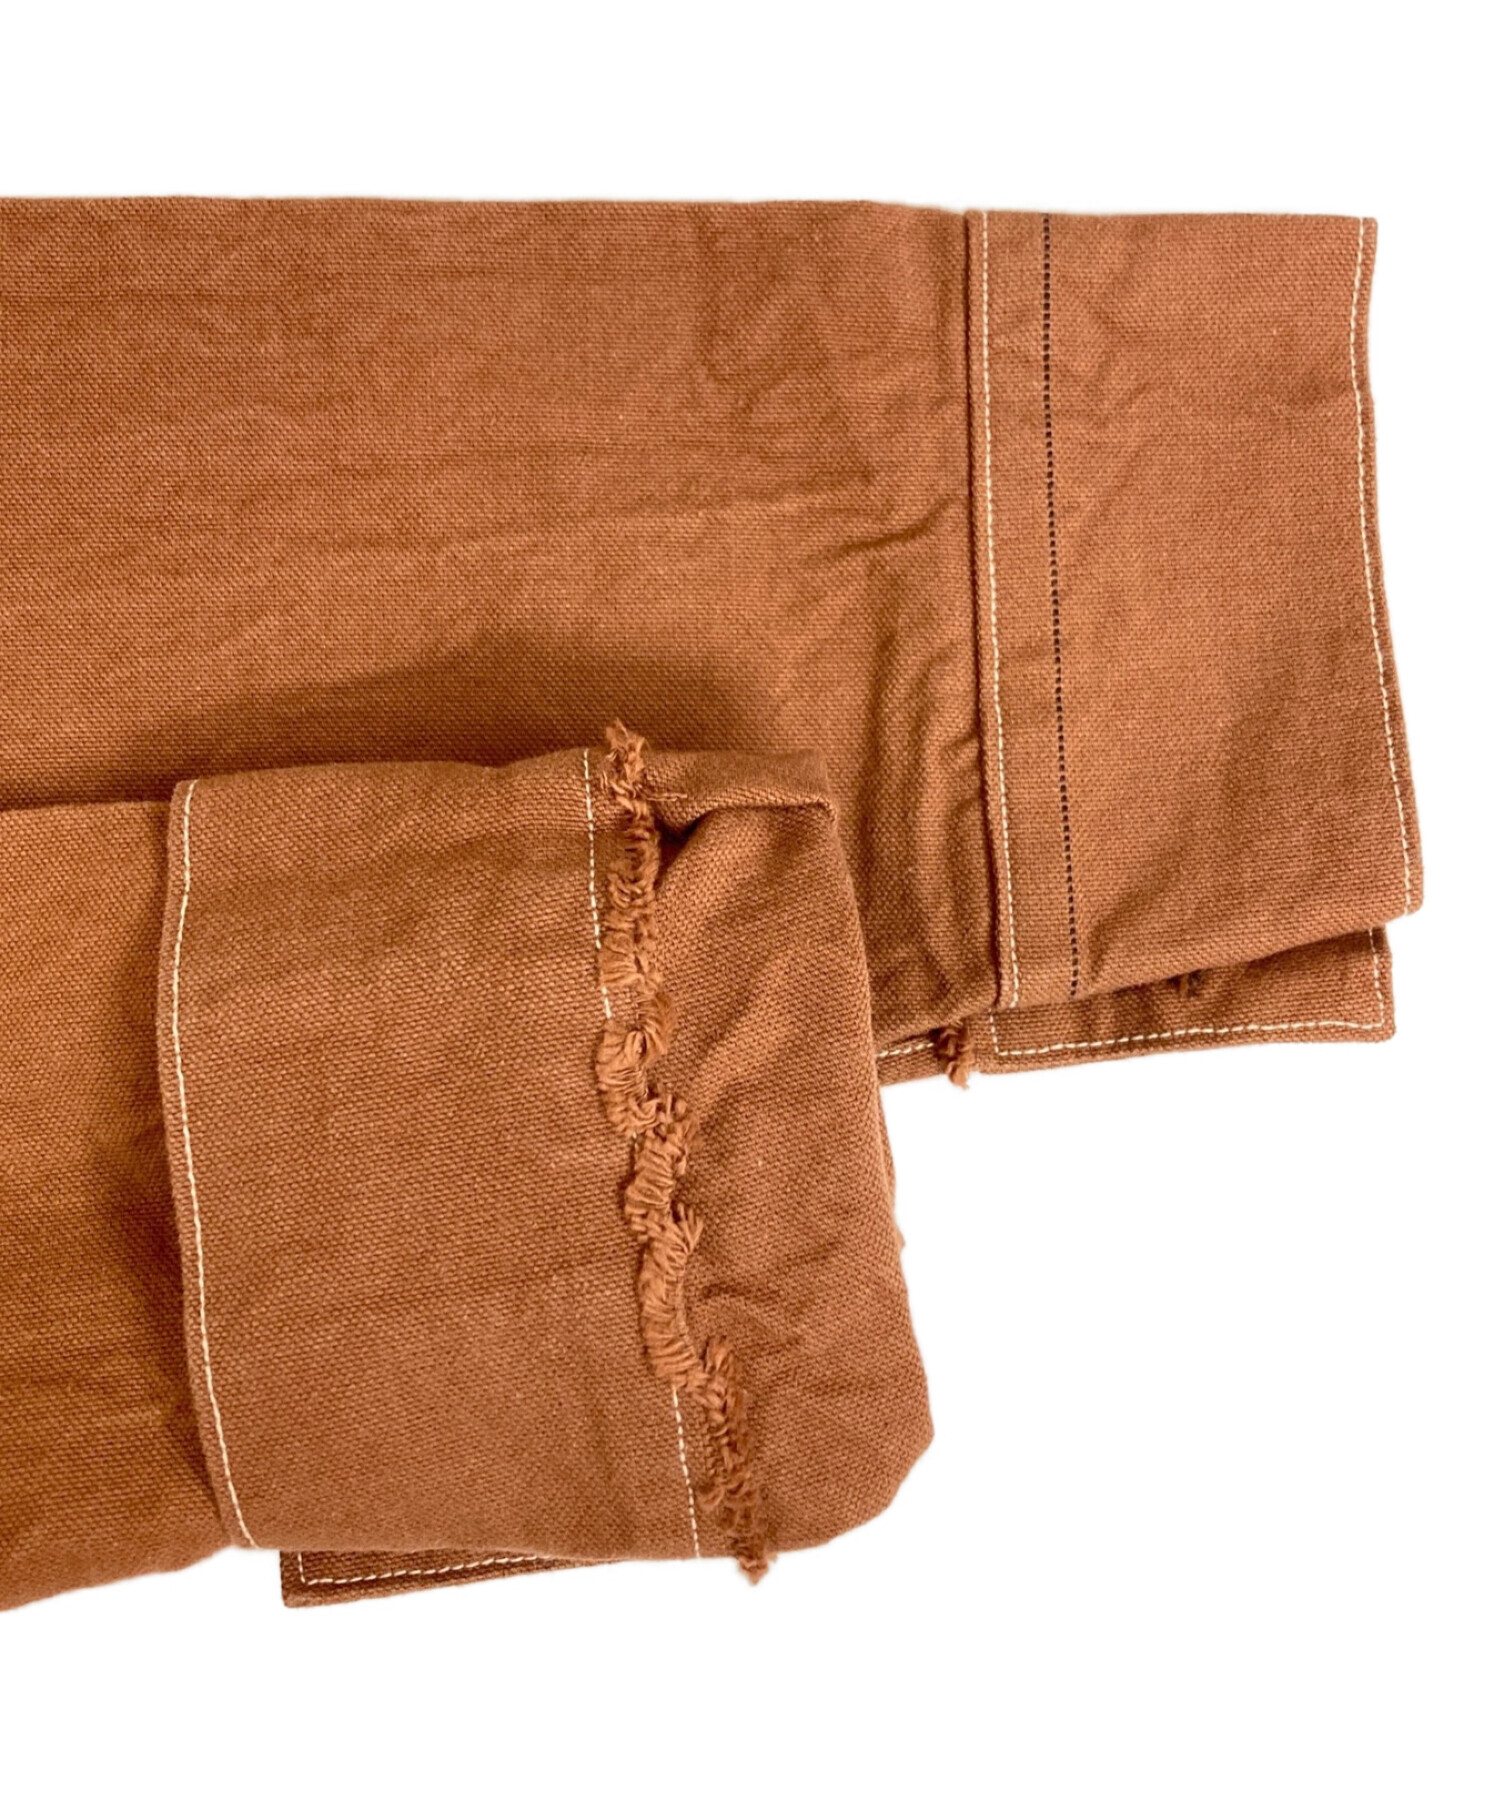 LEVI'S VINTAGE CLOTHING (リーバイスヴィンテージクロージング) 1870`s復刻ダッククローズフロントジャンパー ブラウン  サイズ:M